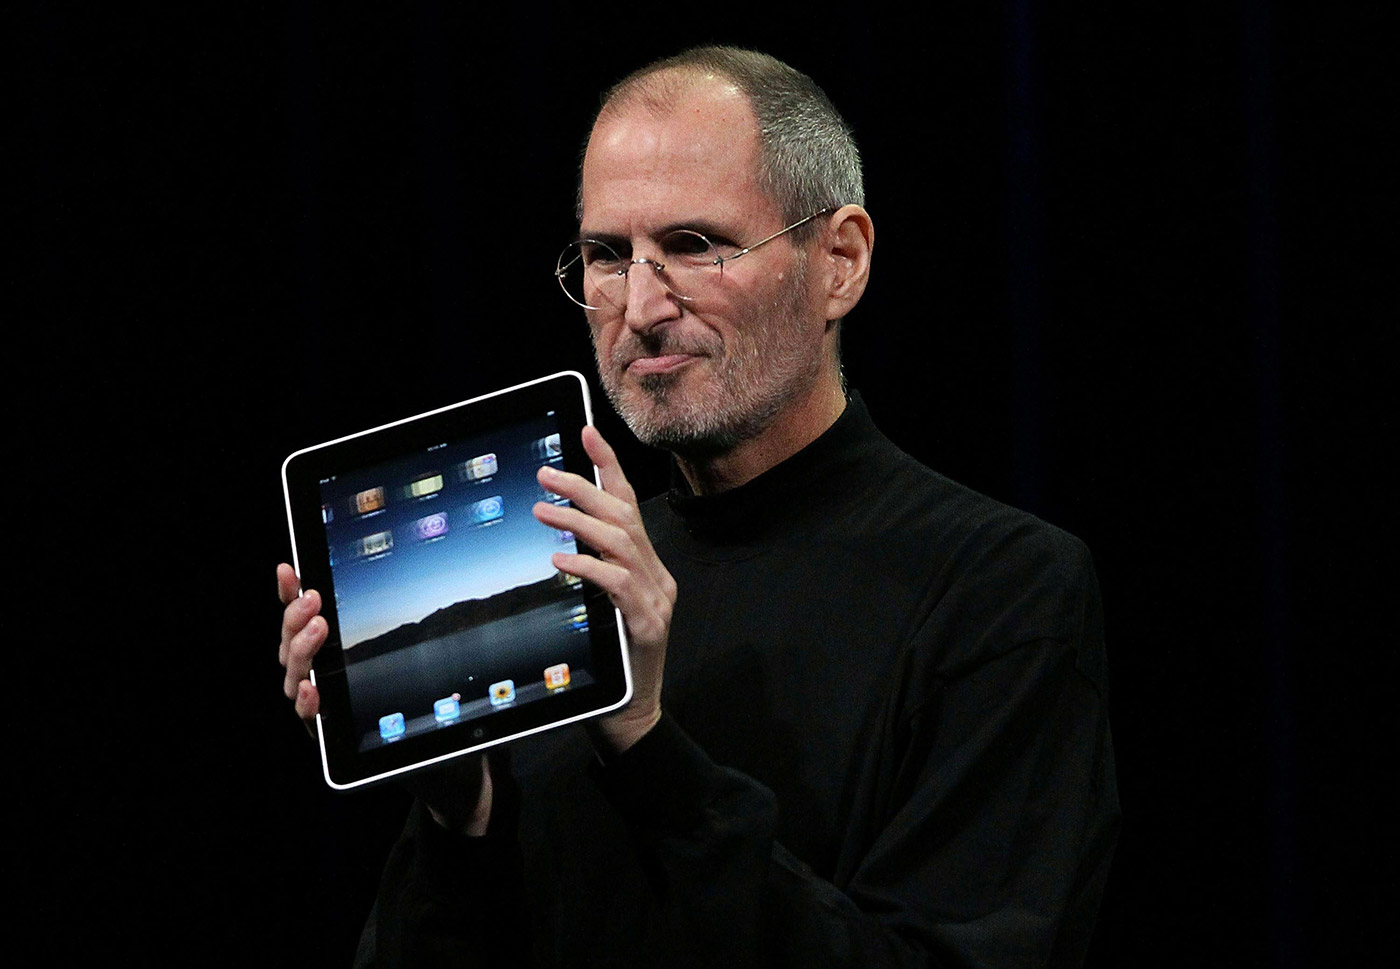 L'iPad compie 7 anni ed è ancora molto usato per il business